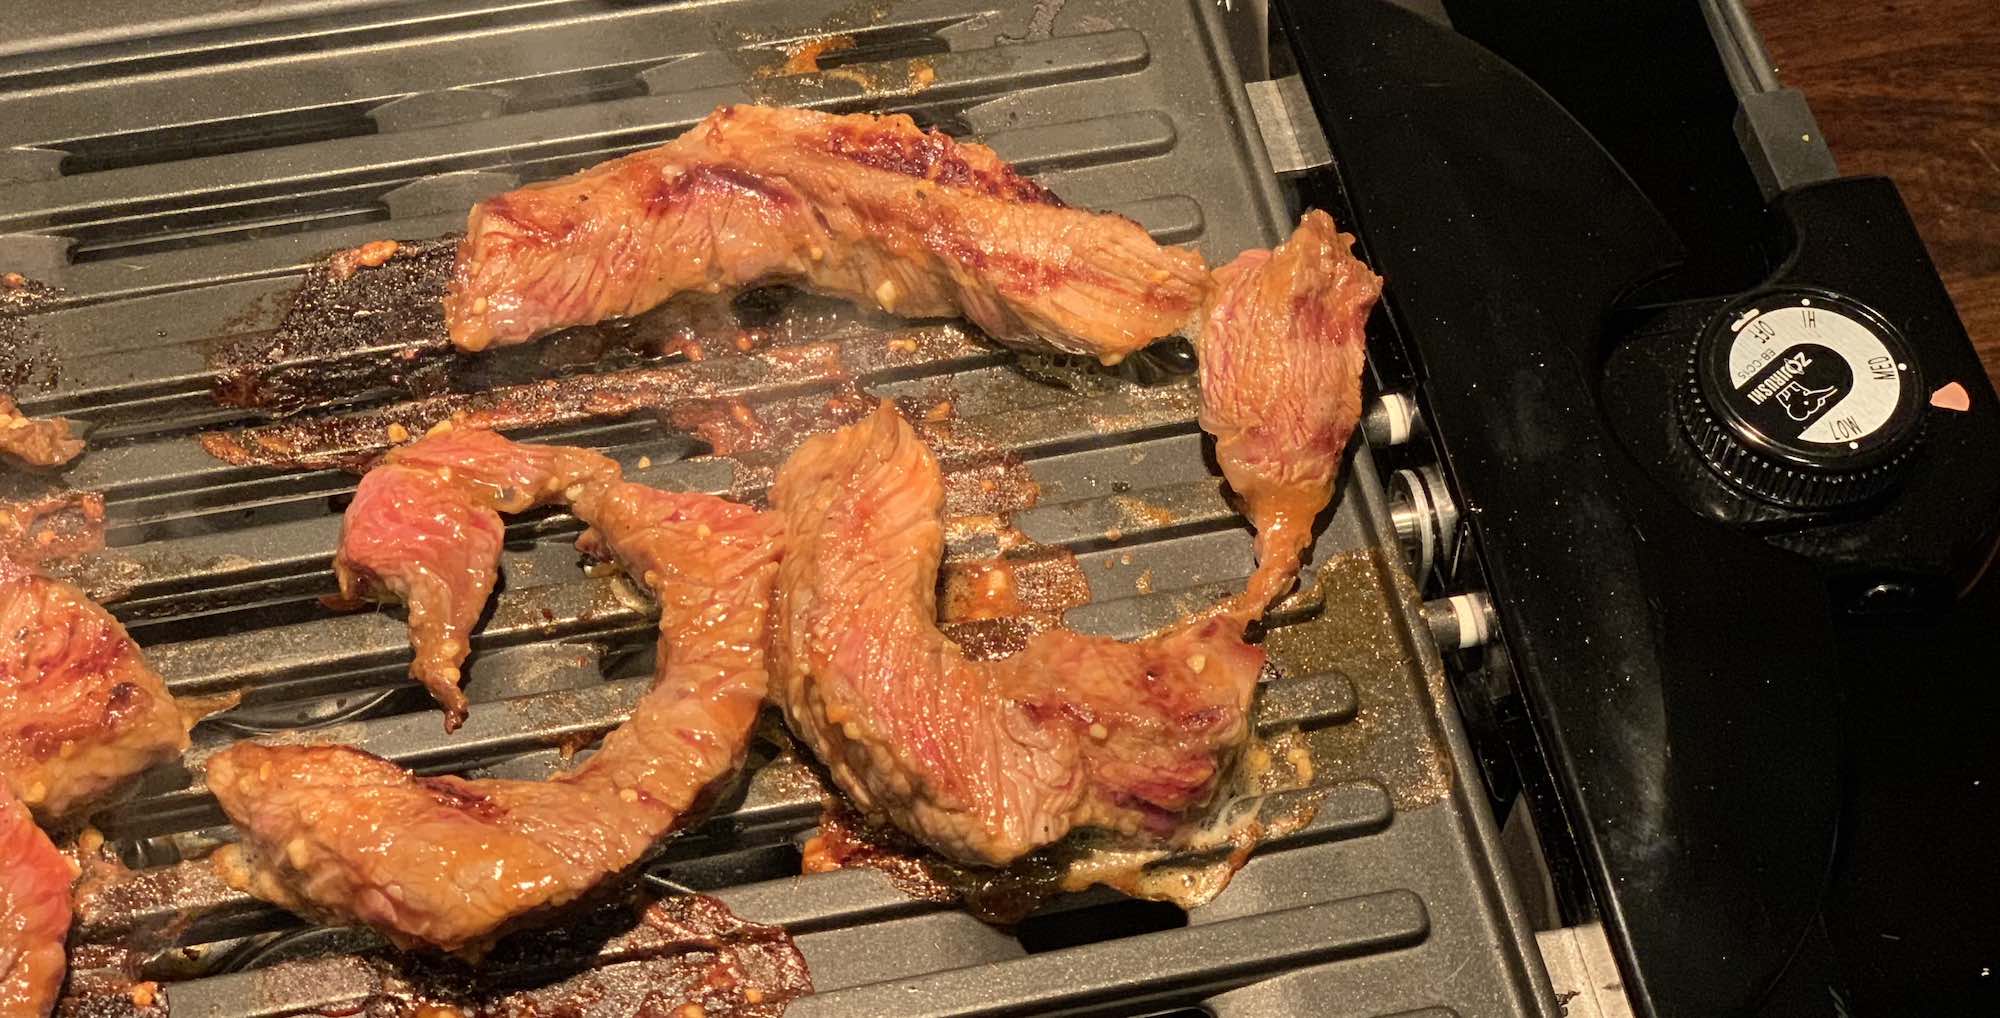 https://blog.bestbuy.ca/wp-content/uploads/2020/04/Zojirushi-indoor-grill-steak.jpg